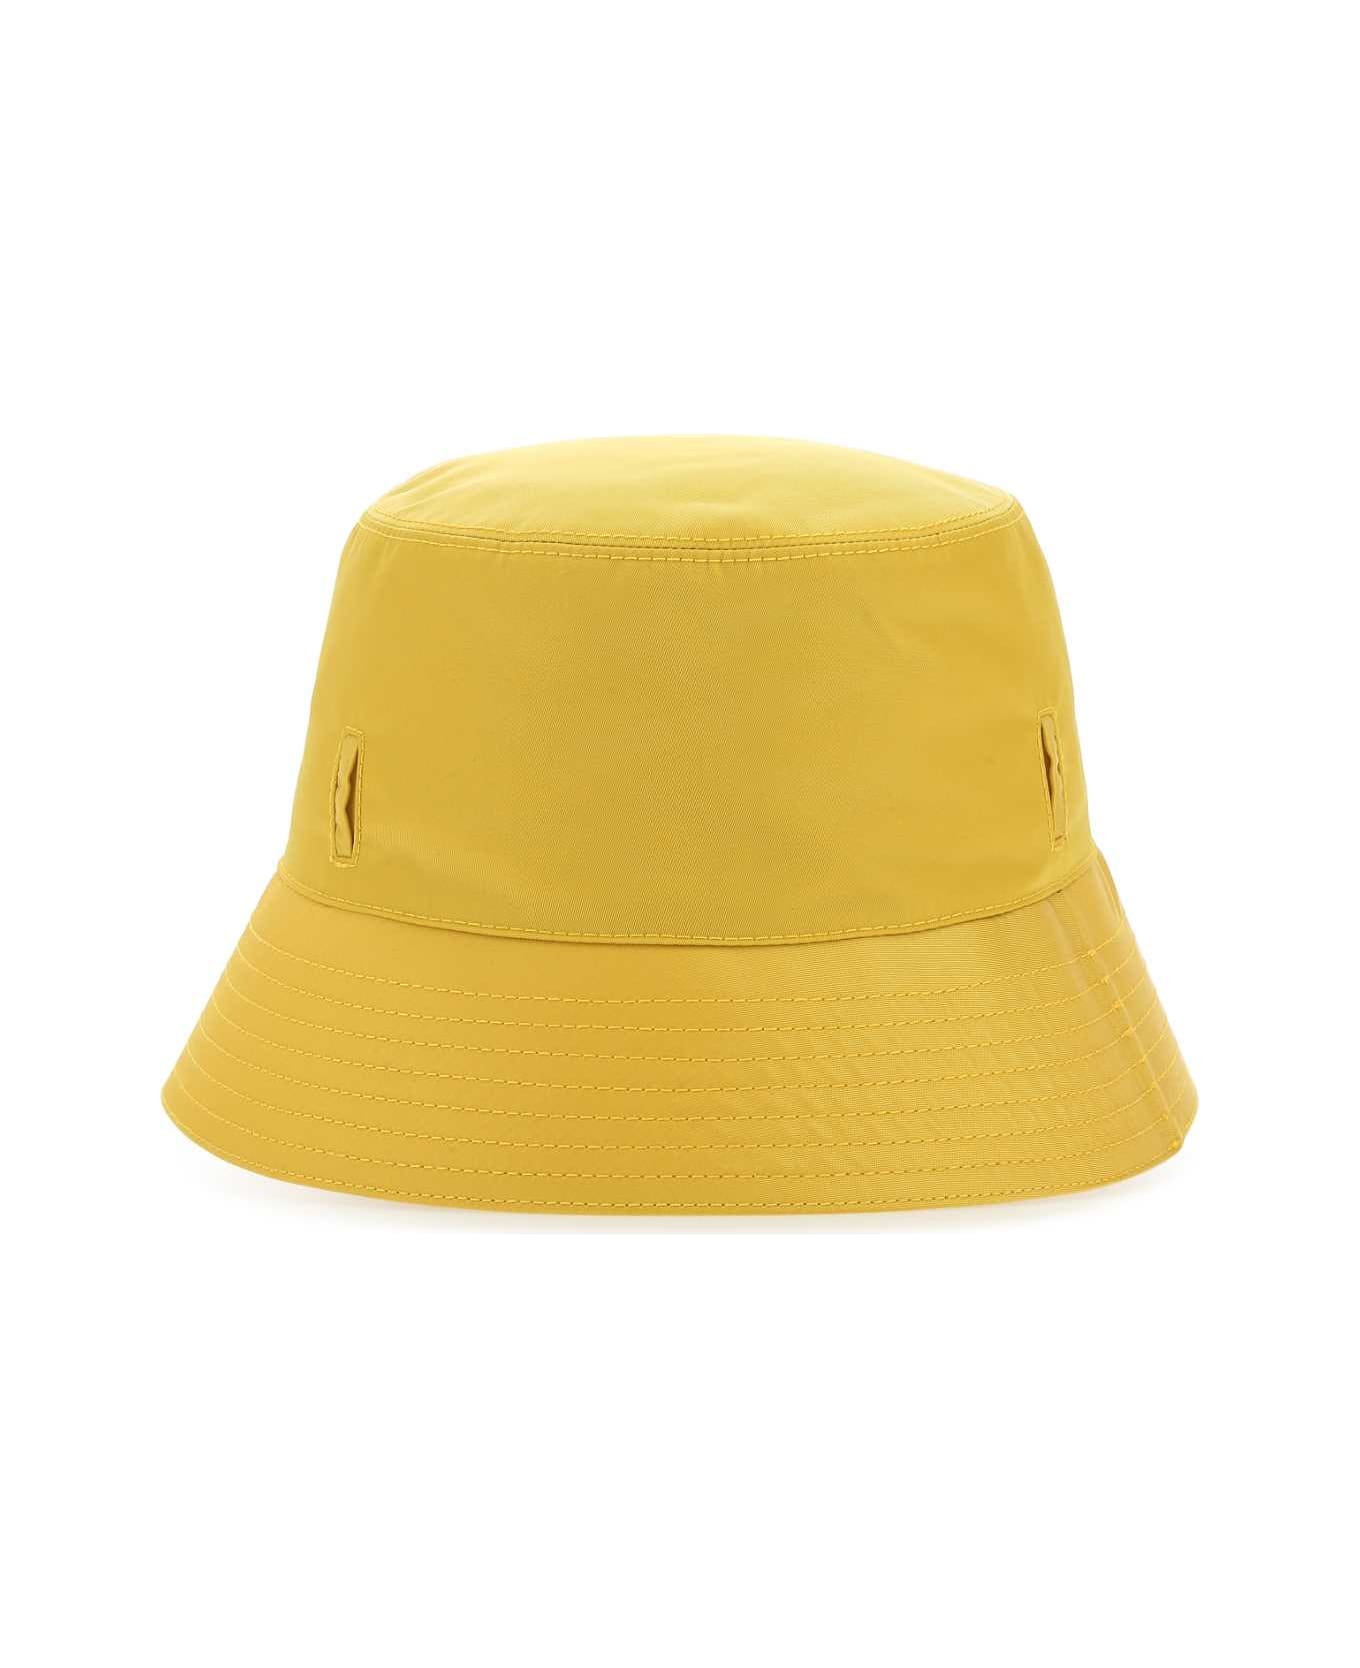 Prada Yellow Re-nylon Hat - F0010